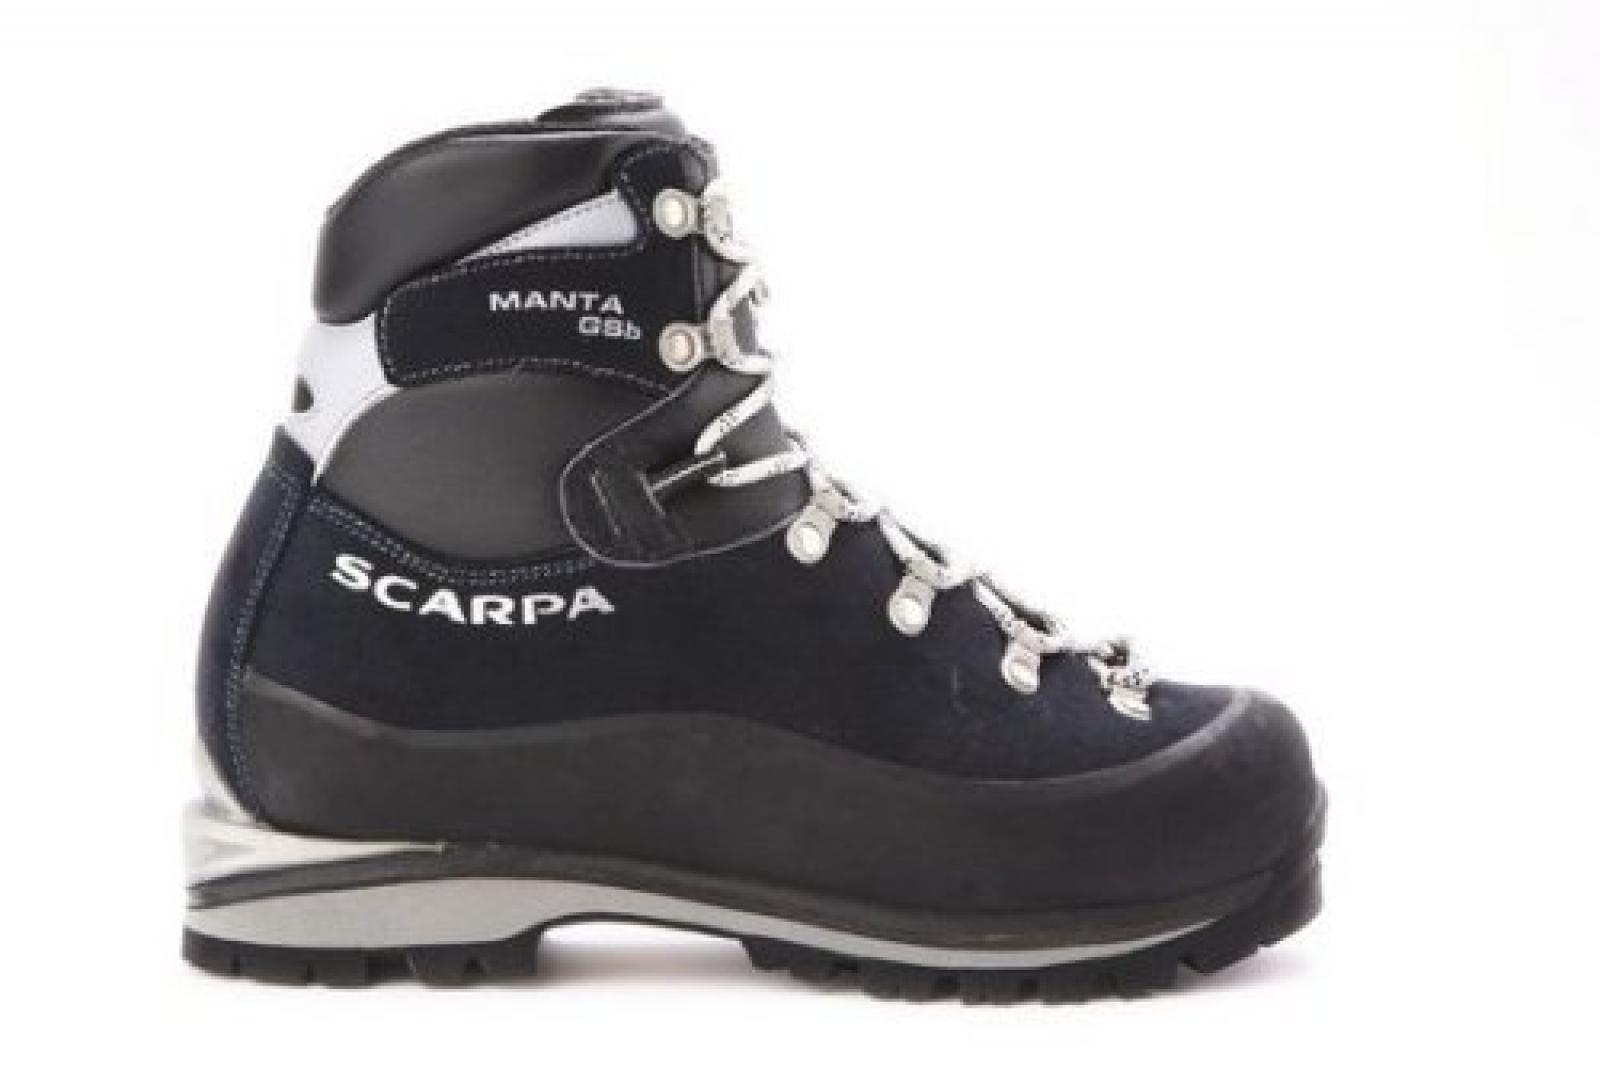 Manta Mountaineering Boots - size: 41 EU - Colour: Navy 